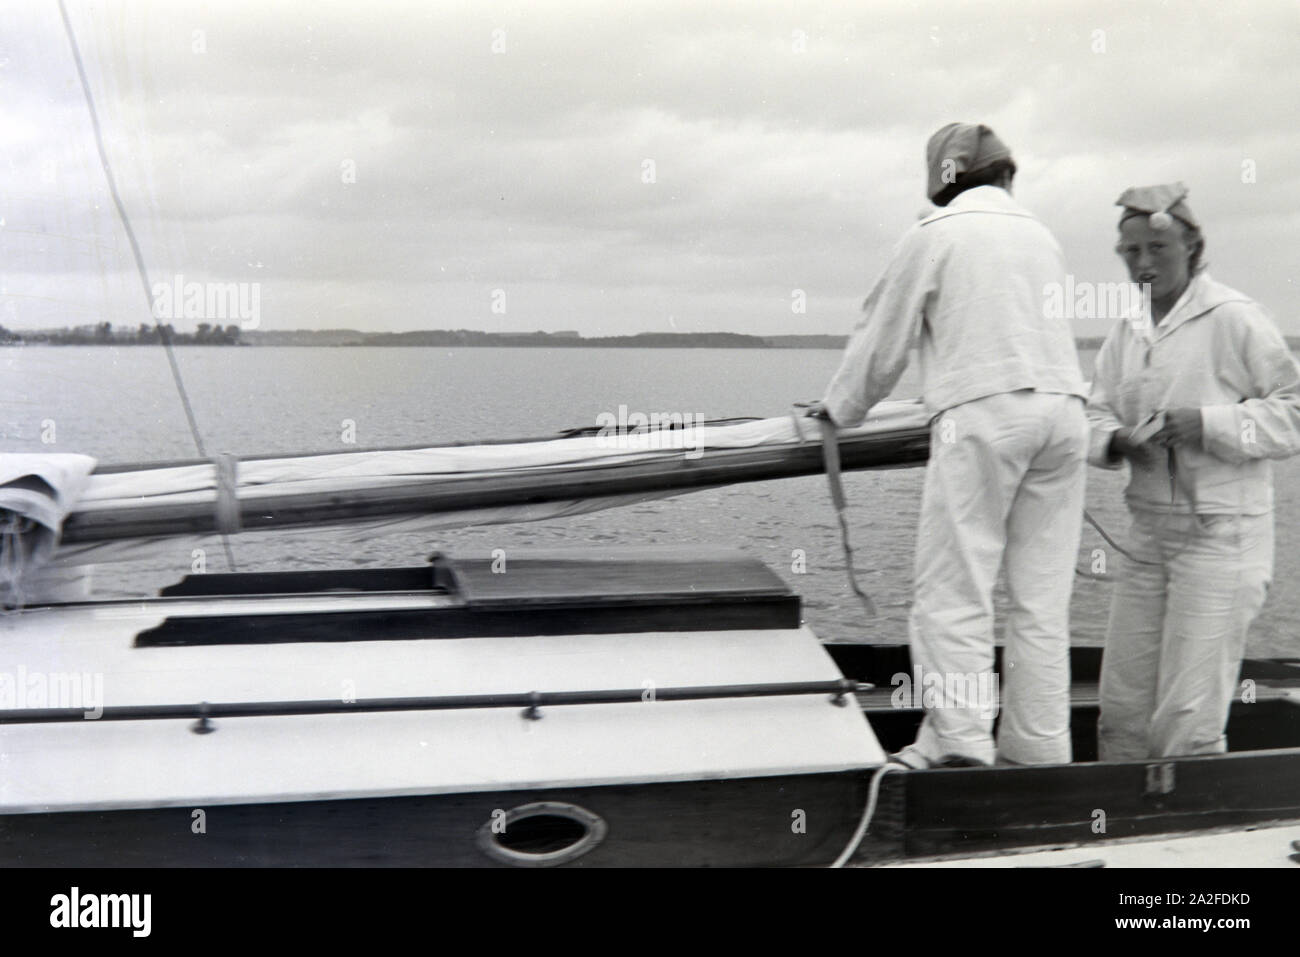 Zwei Seglerinnen in Seglerbekleidung mit Bommelmütze auf einem Bootsausflug auf dem Chiemsee, Deutschland 1930er Jahre. Two yachtswomen in a sailing uniform on a boat on the Chiemsee, Germany 1930s. Stock Photo